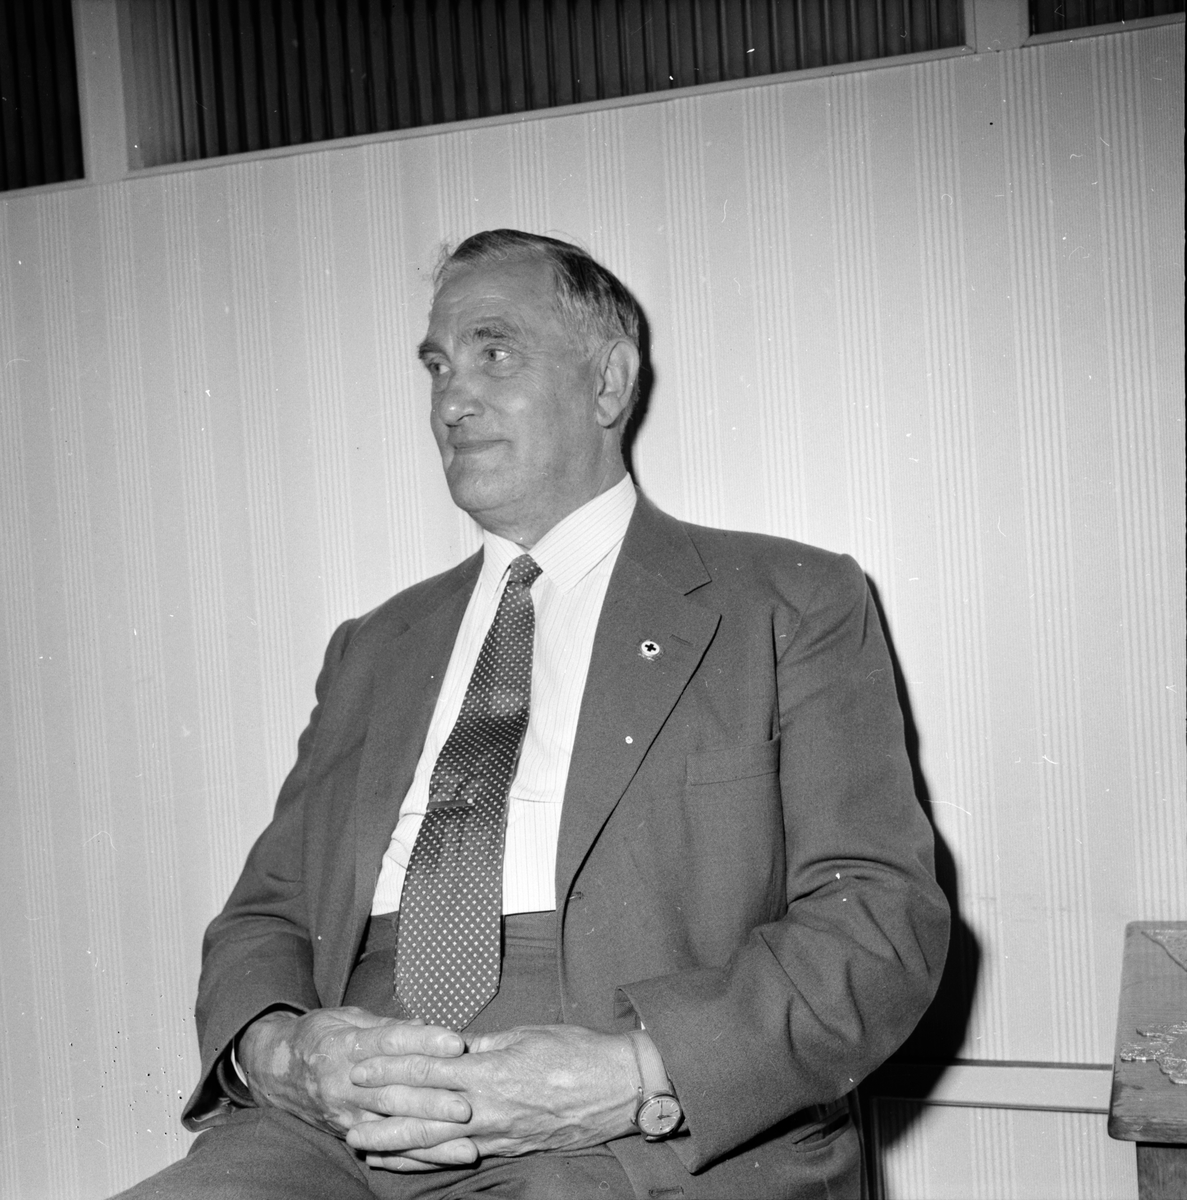 Fredriksson Nathan,Distr.förest.
Missionskyrkan,
21 Augusti 1962
